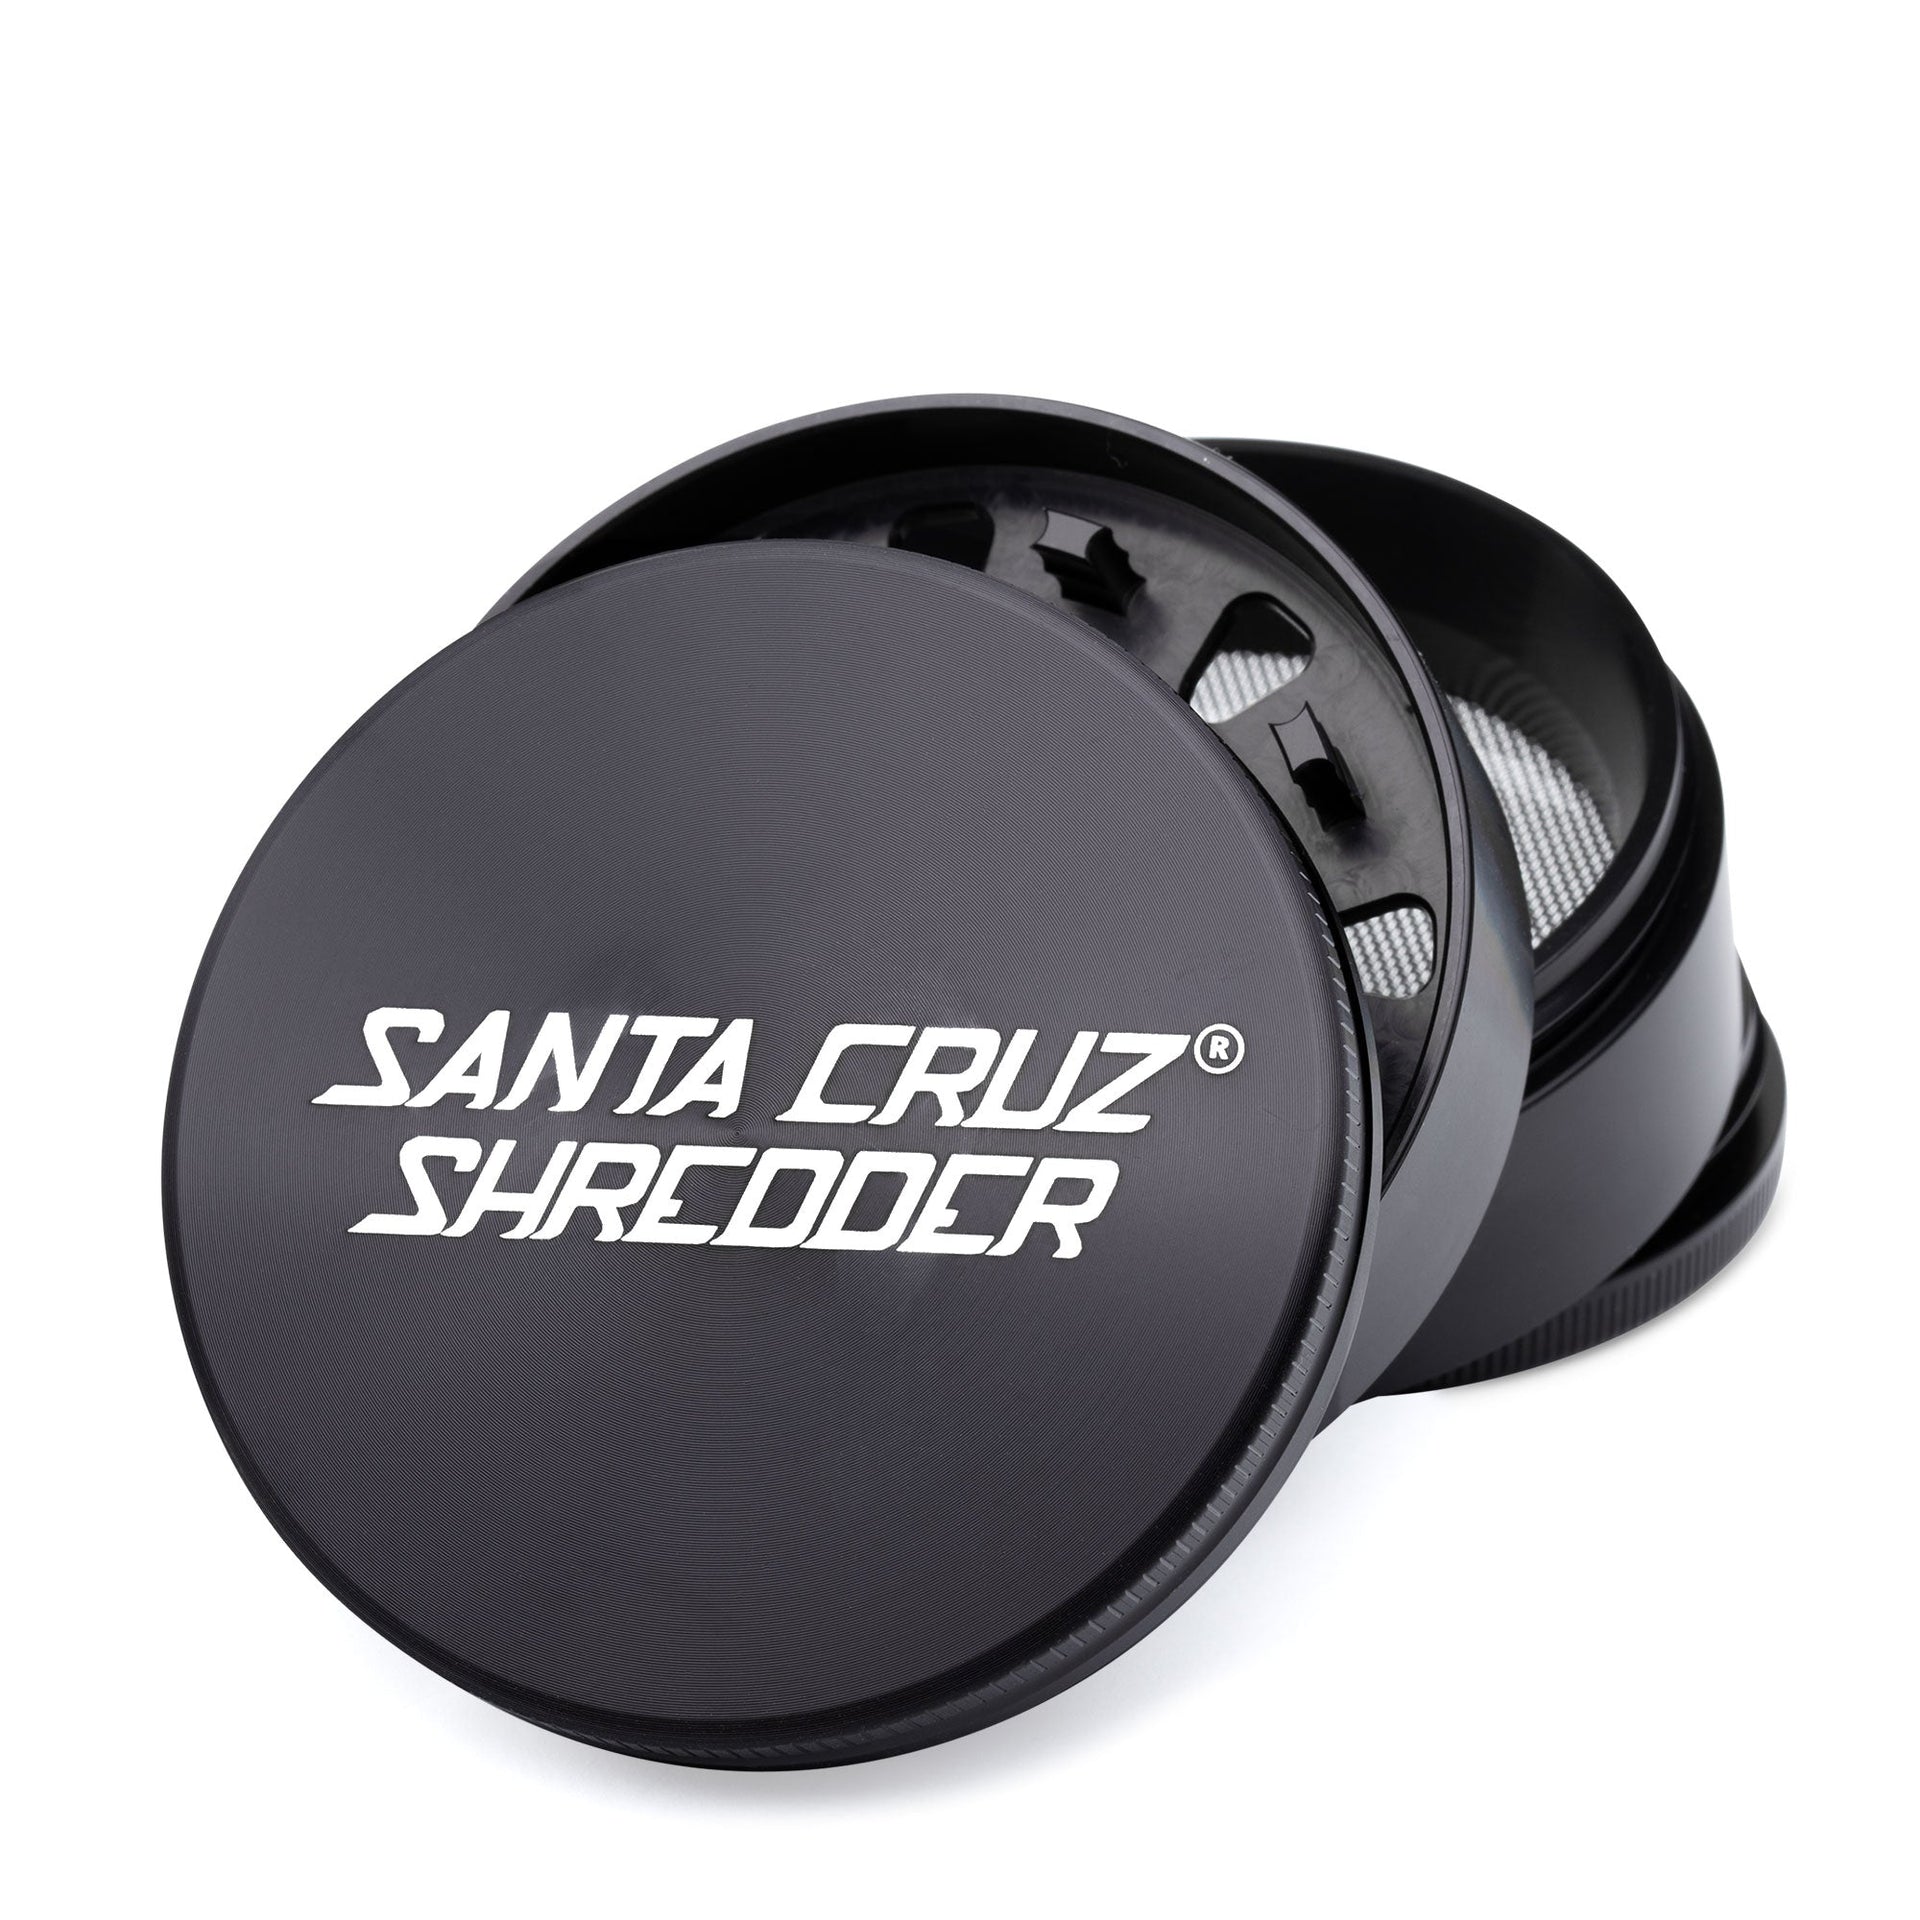 https://www.420science.com/cdn/shop/products/santa-cruz-shredder-large-4-piece-grinder-grinders-420-science-157817.jpg?v=1652400227&width=1920